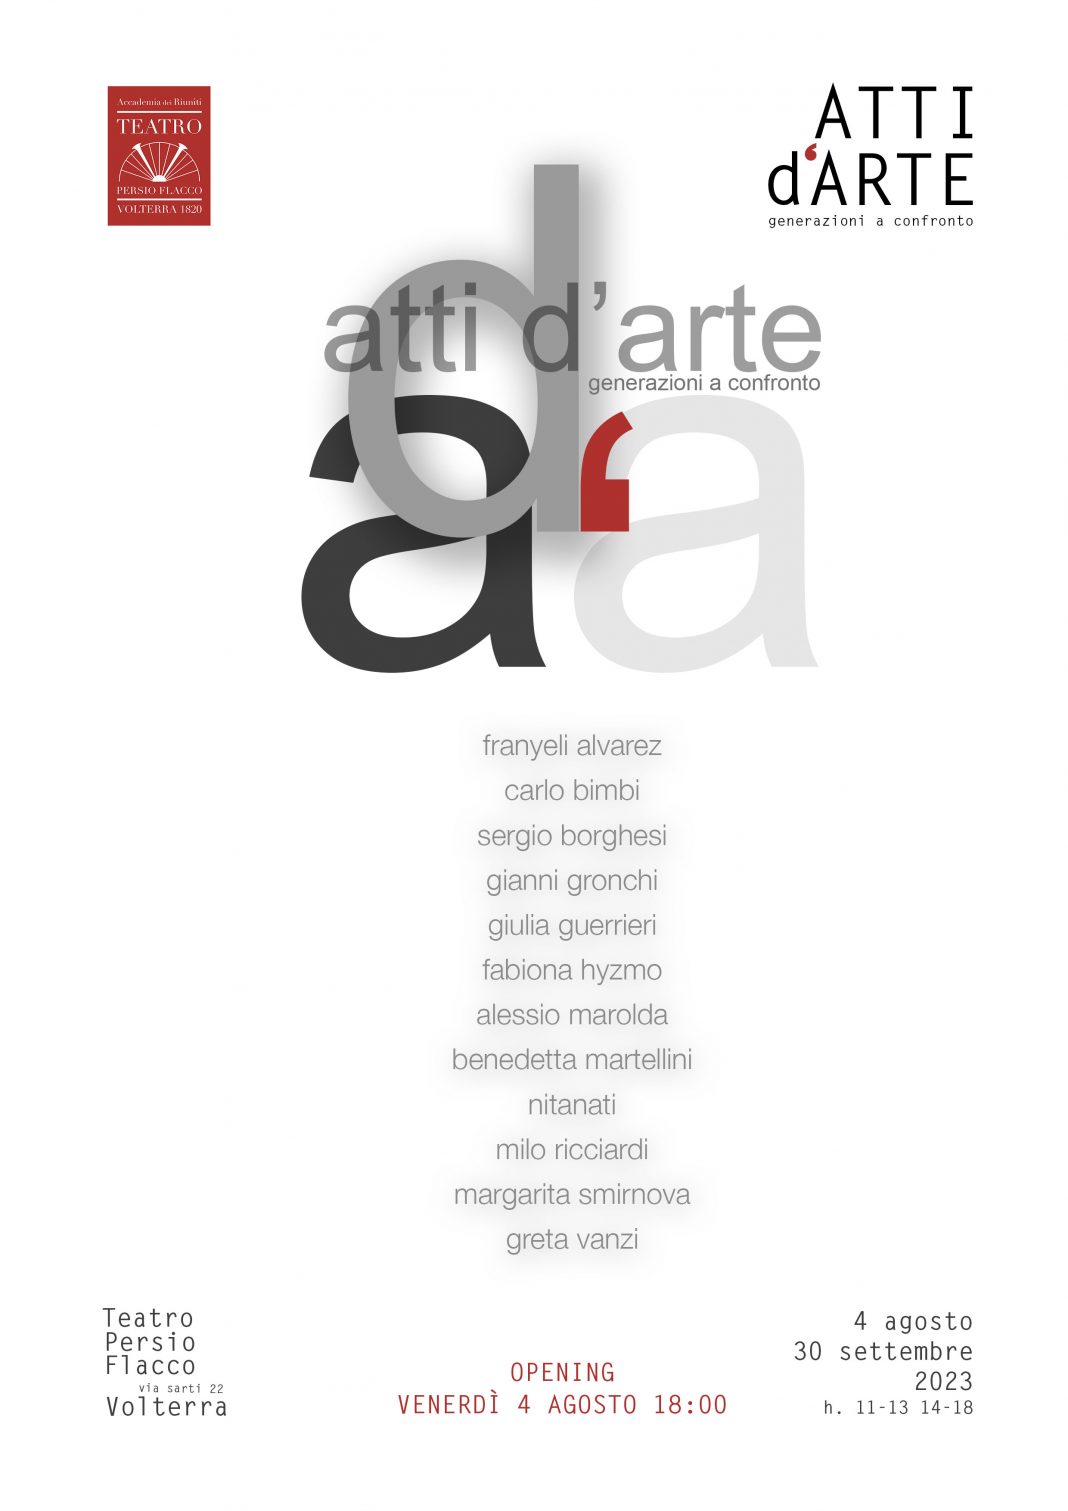 Atti d’Artehttps://www.exibart.com/repository/media/formidable/11/img/579/atti-darte-pubblicazione-giugno-1068x1511.jpg